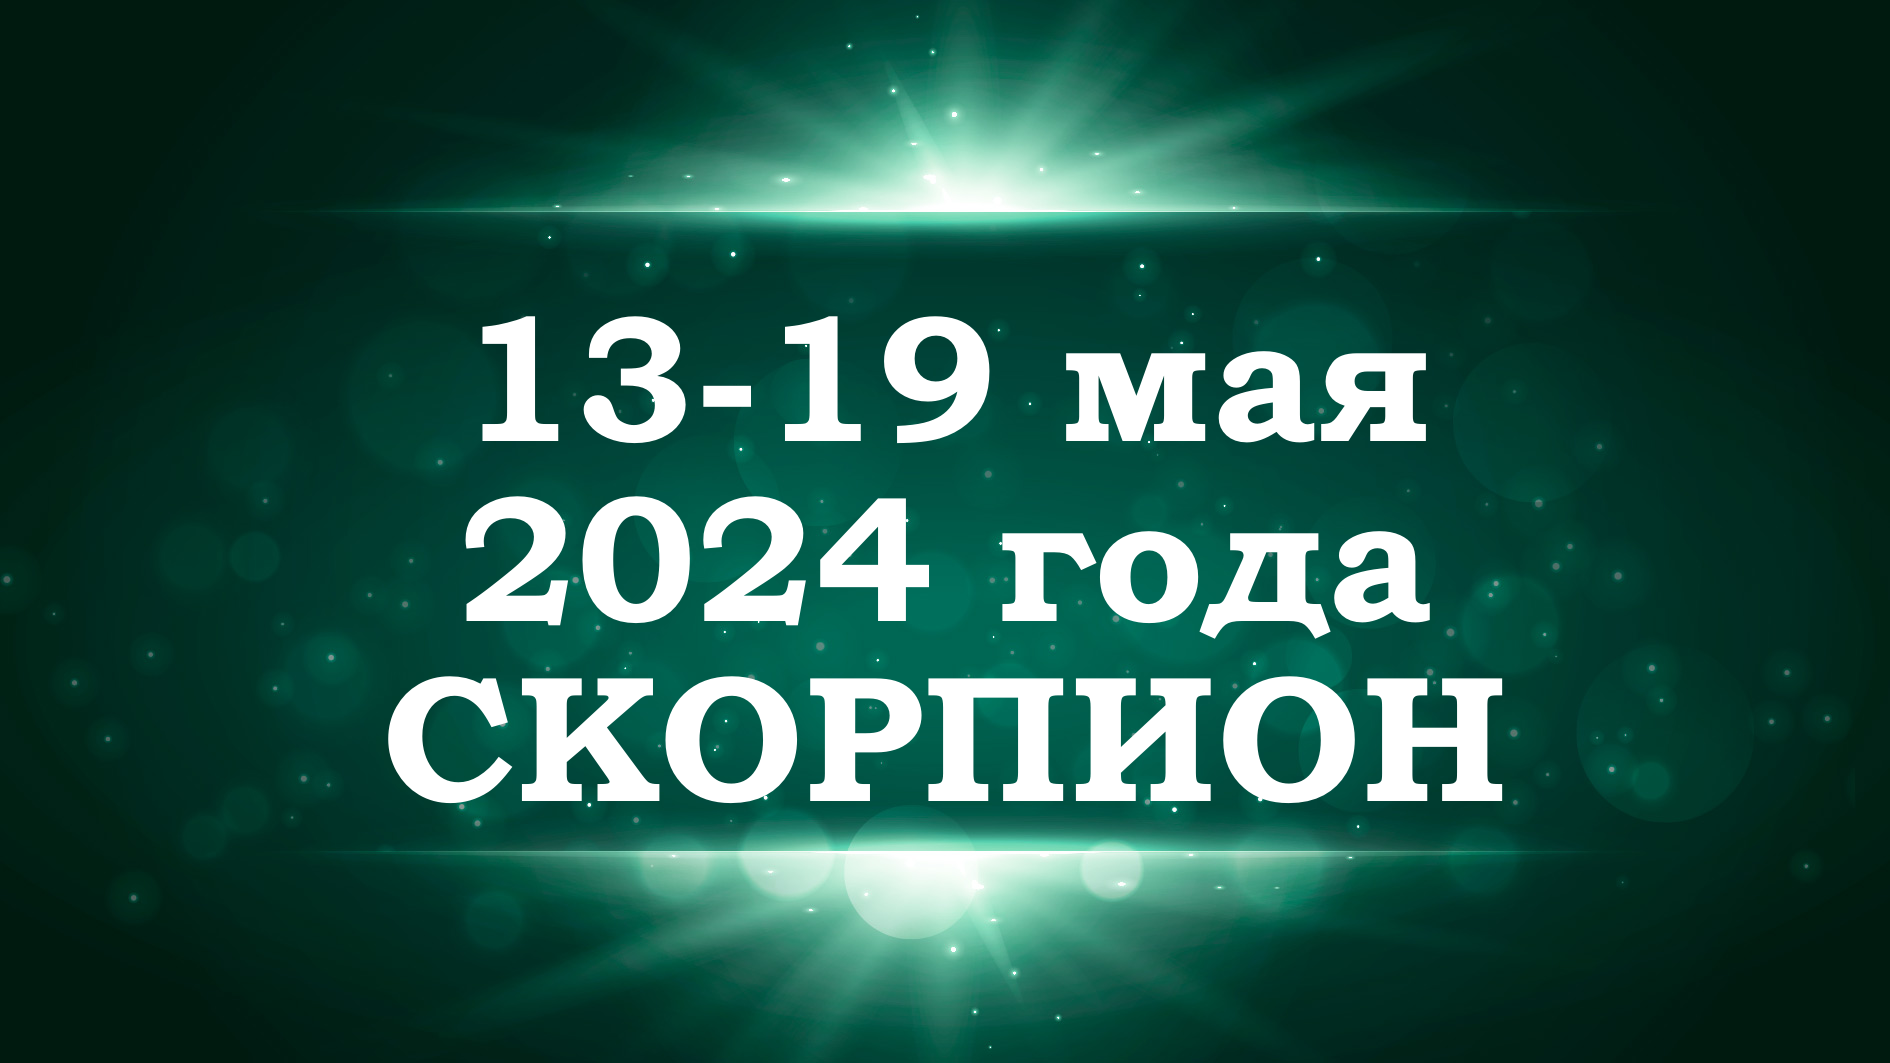 СКОРПИОН | ТАРО прогноз на неделю с 13 по 19 мая 2024 года